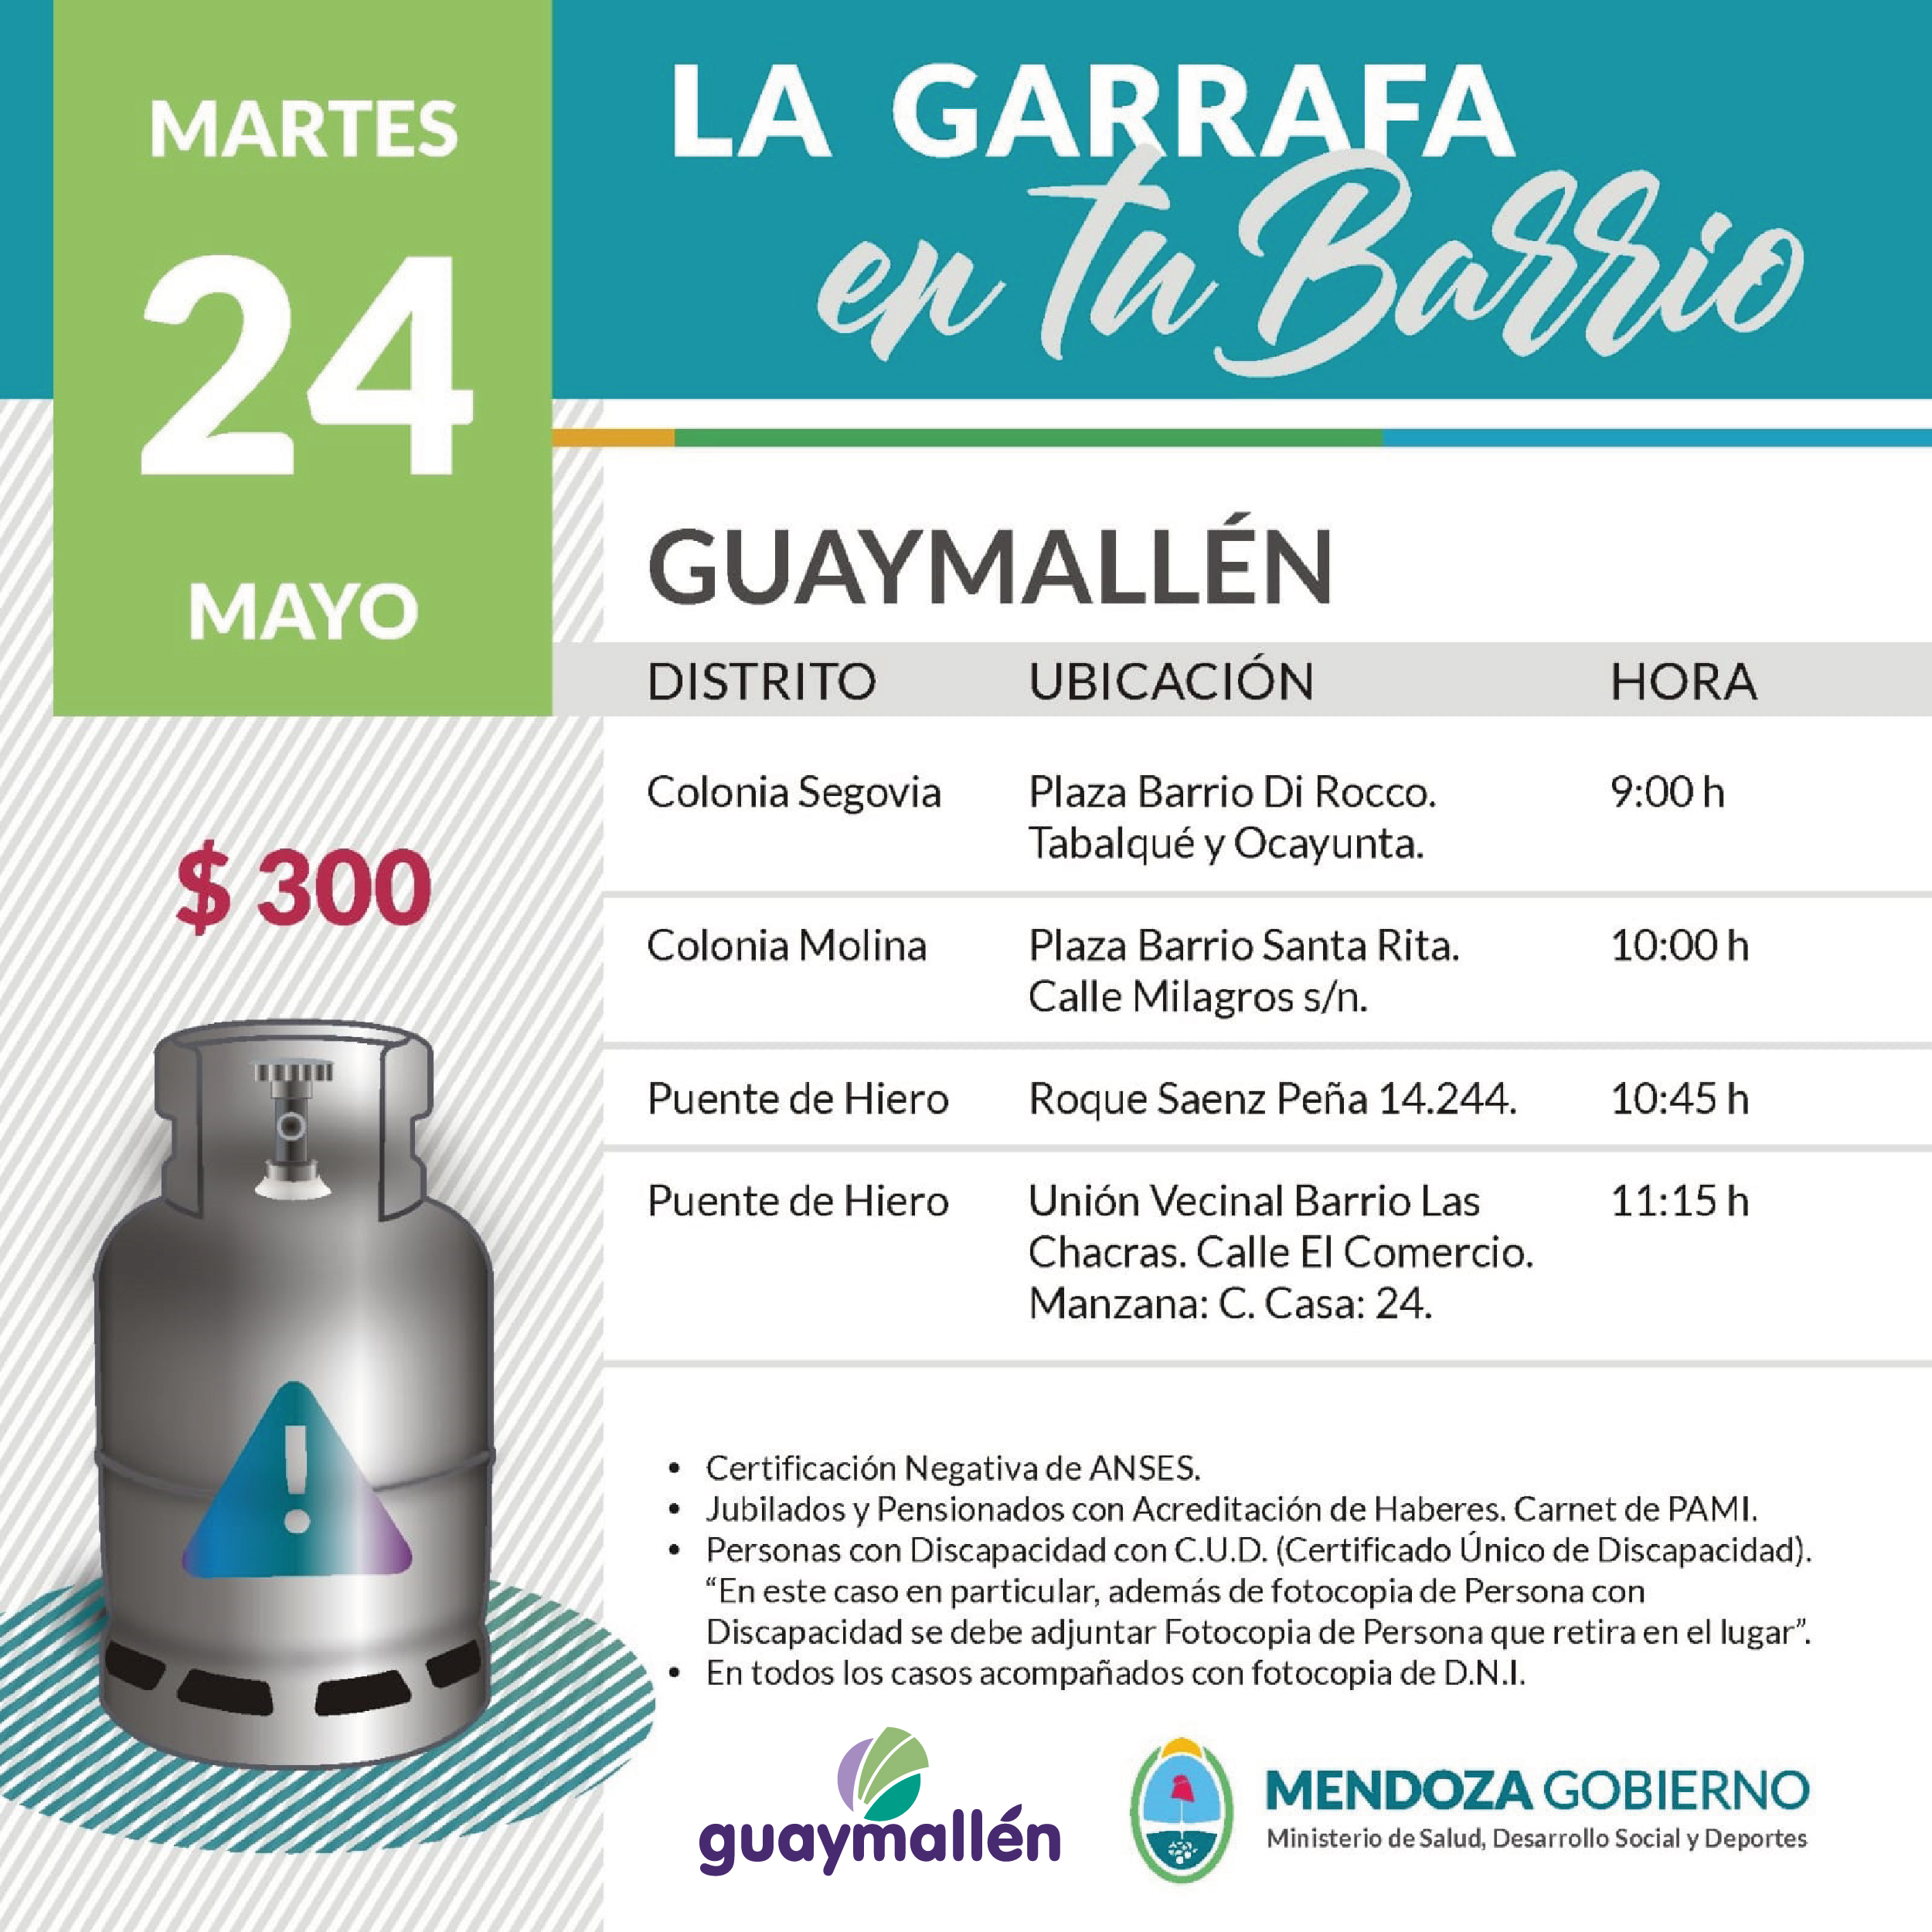 La Garrafa en tu Barrio con subsidio provincial. 24 de mayo.